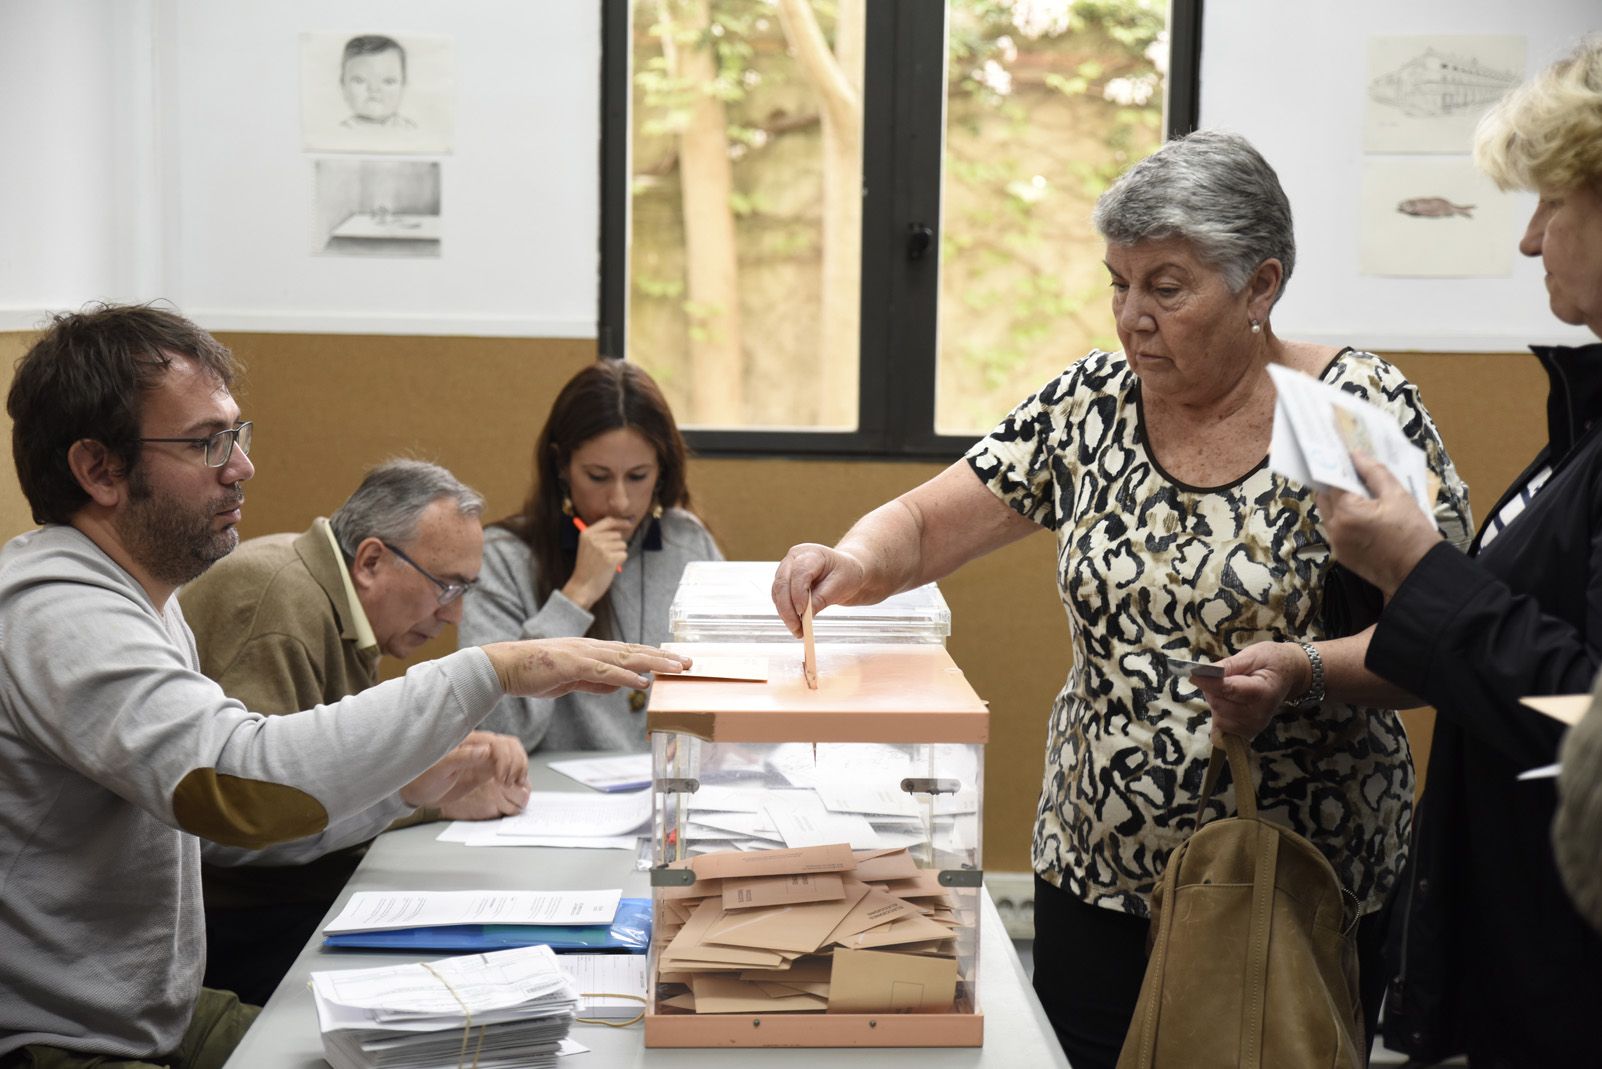 Votants a l'Ateneu per les eleccions al congrés Espanyol. Foto: Bernat Millet.